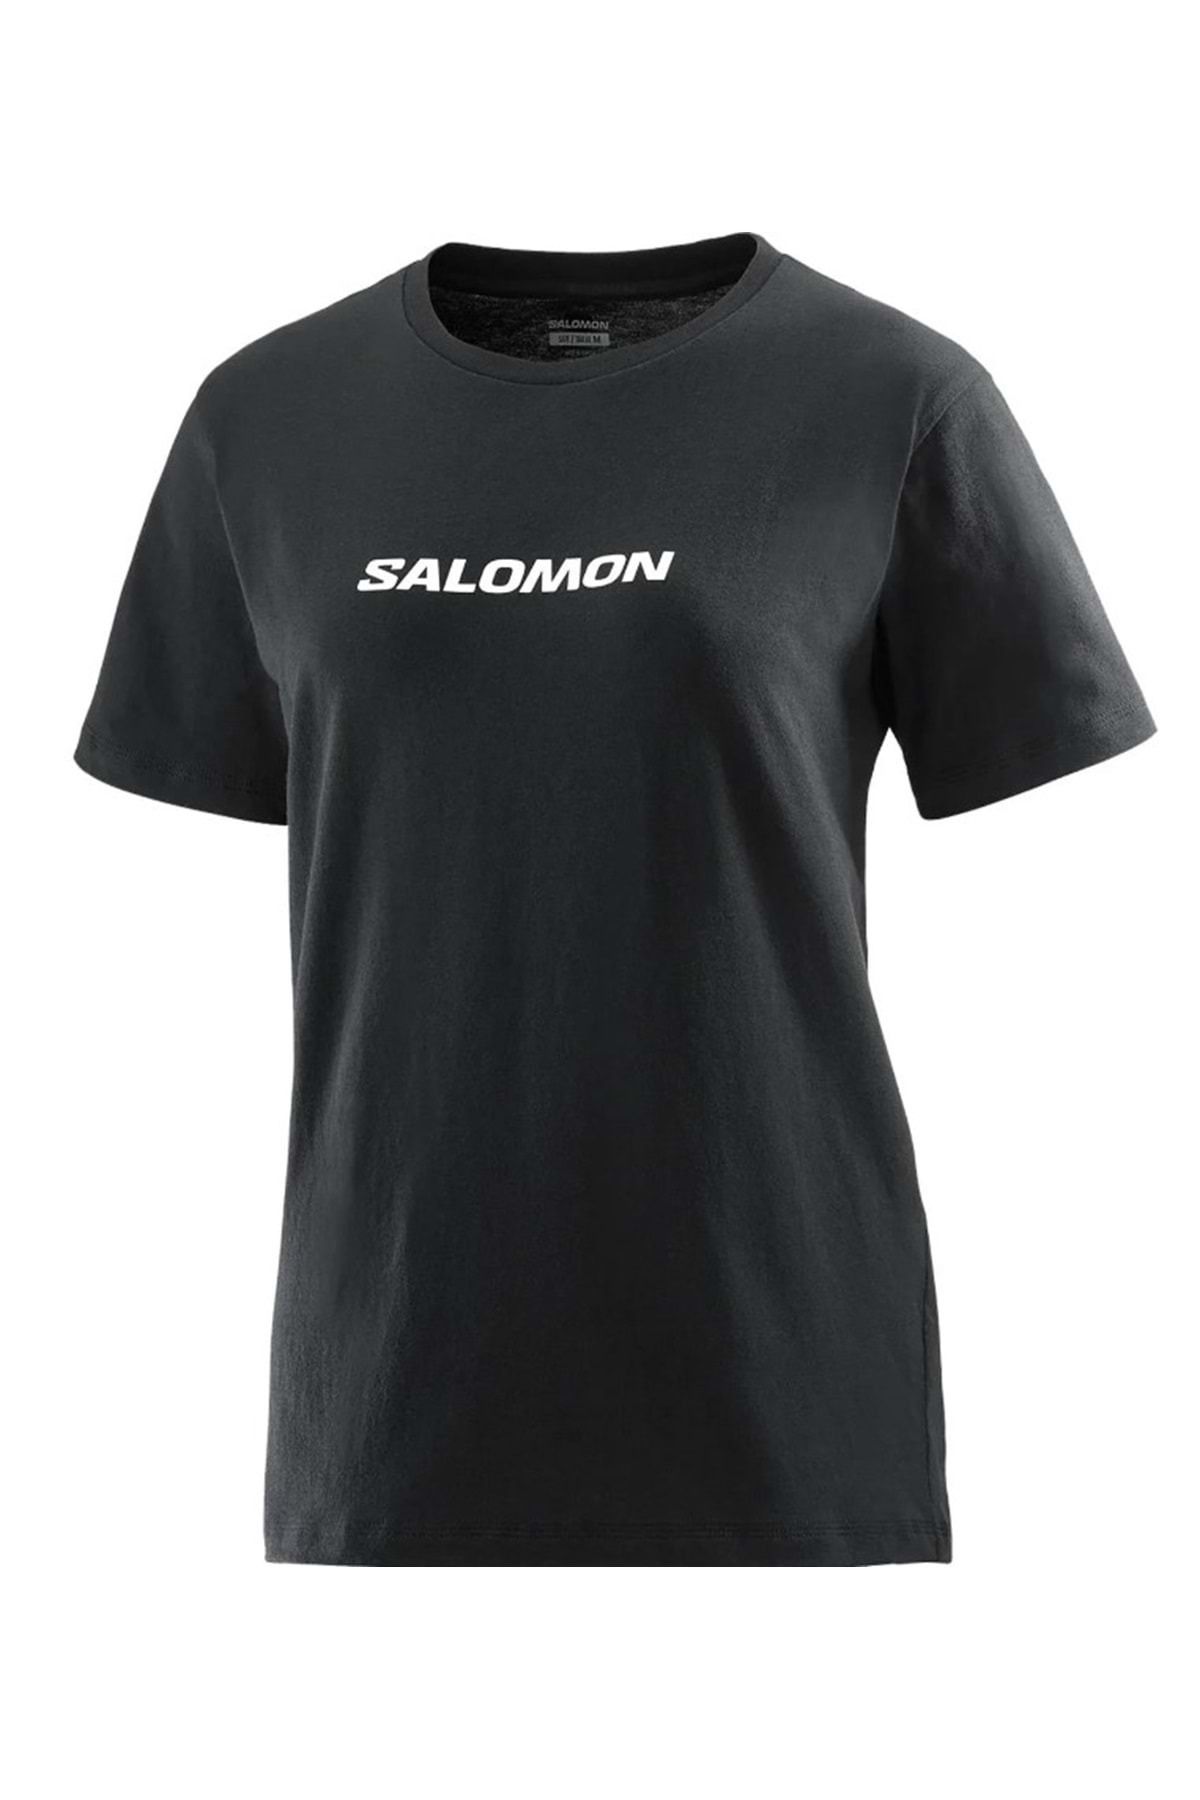 Salomon Lc2217 Logo Ss Tee W Tişört Kadın T-shirt Siyah